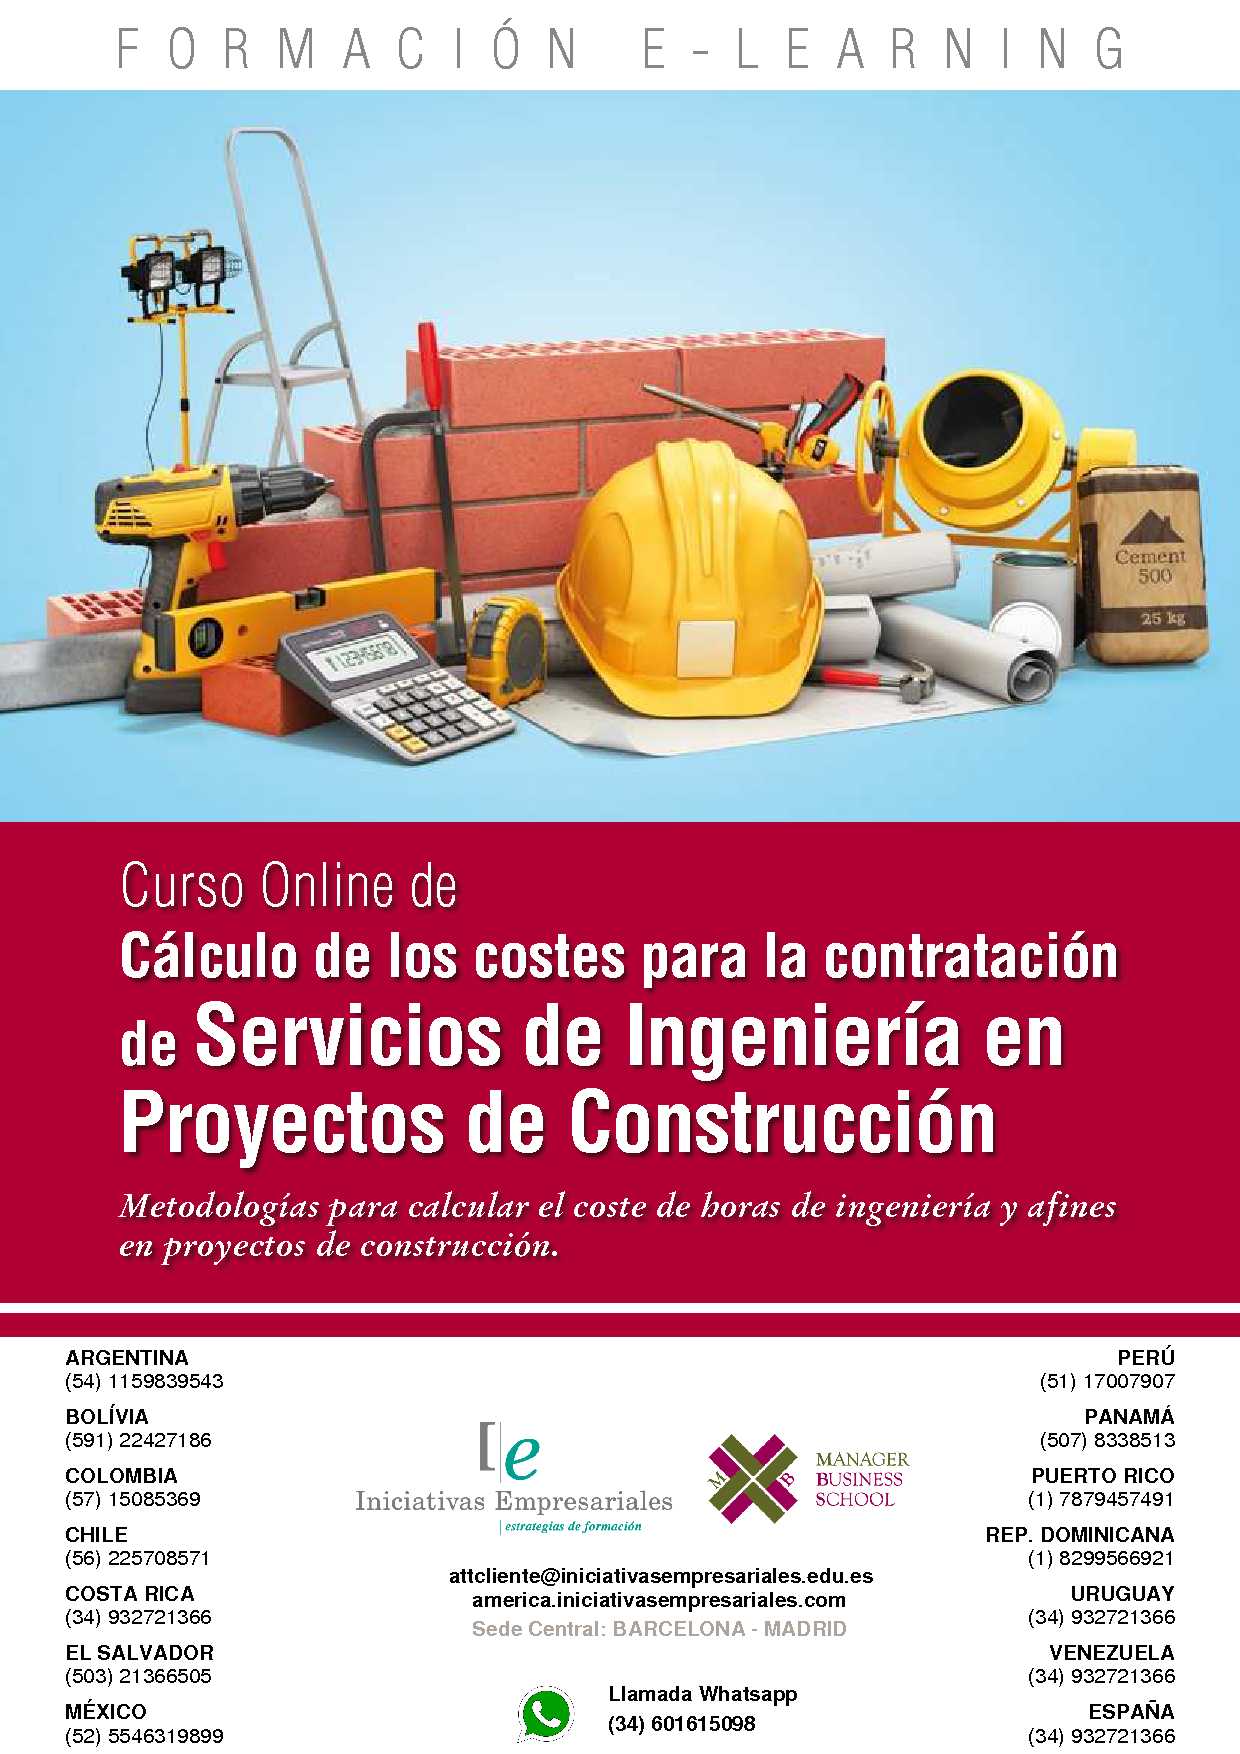 Cálculo de los costes para la contratación de Servicios de Ingeniería en Proyectos de Construcción